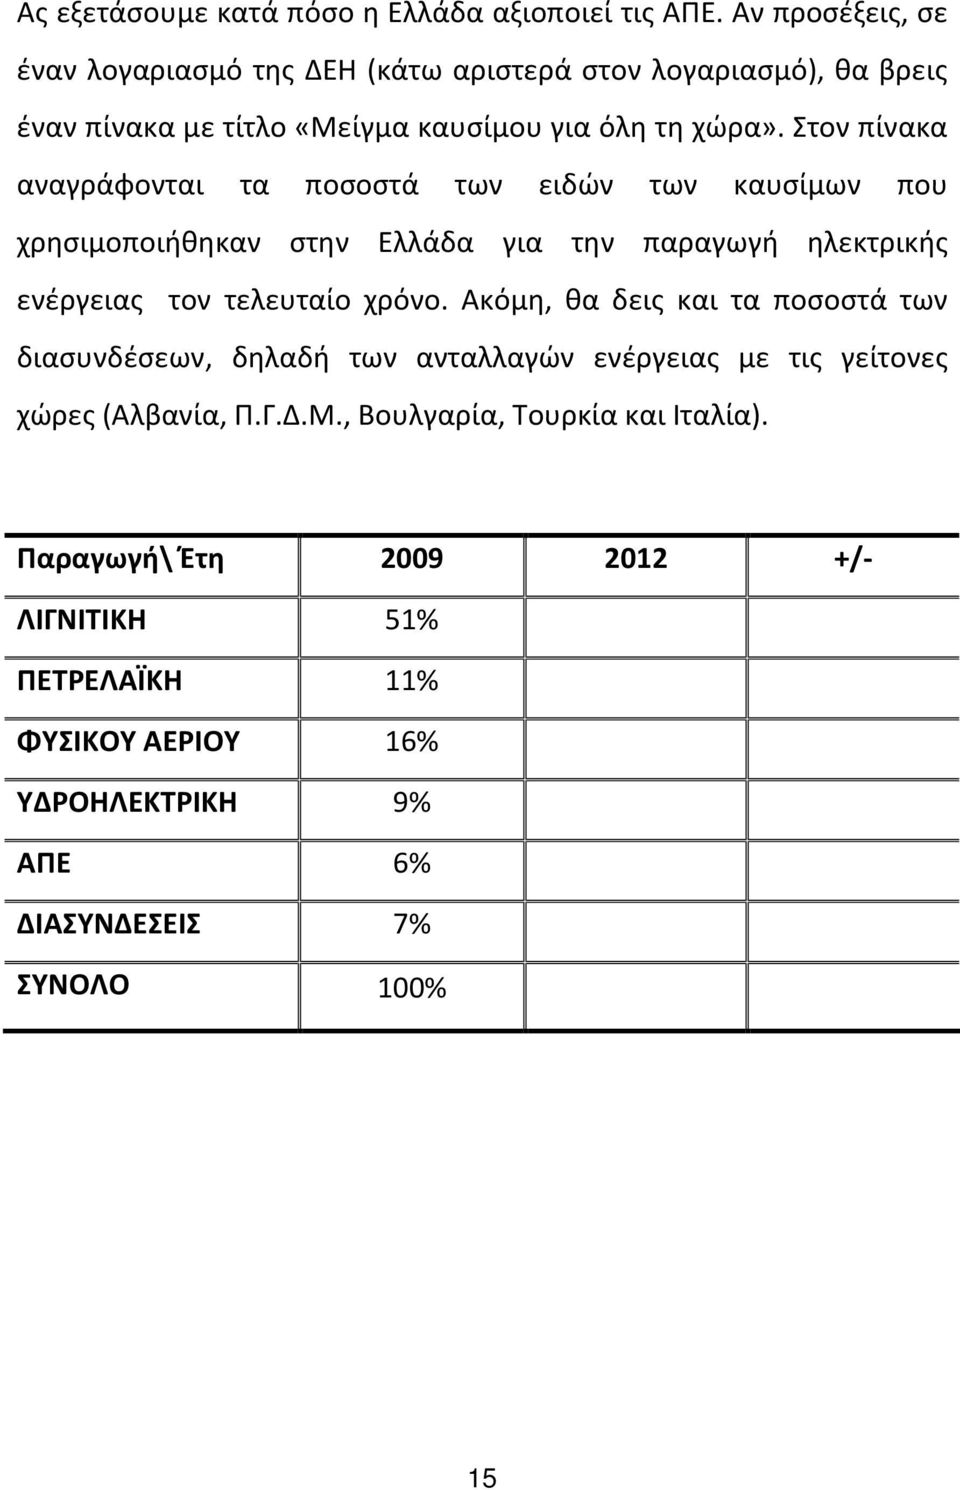 Στον πίνακα αναγράφονται τα ποσοστά των ειδών των καυσίμων που χρησιμοποιήθηκαν στην Ελλάδα για την παραγωγή ηλεκτρικής ενέργειας τον τελευταίο χρόνο.